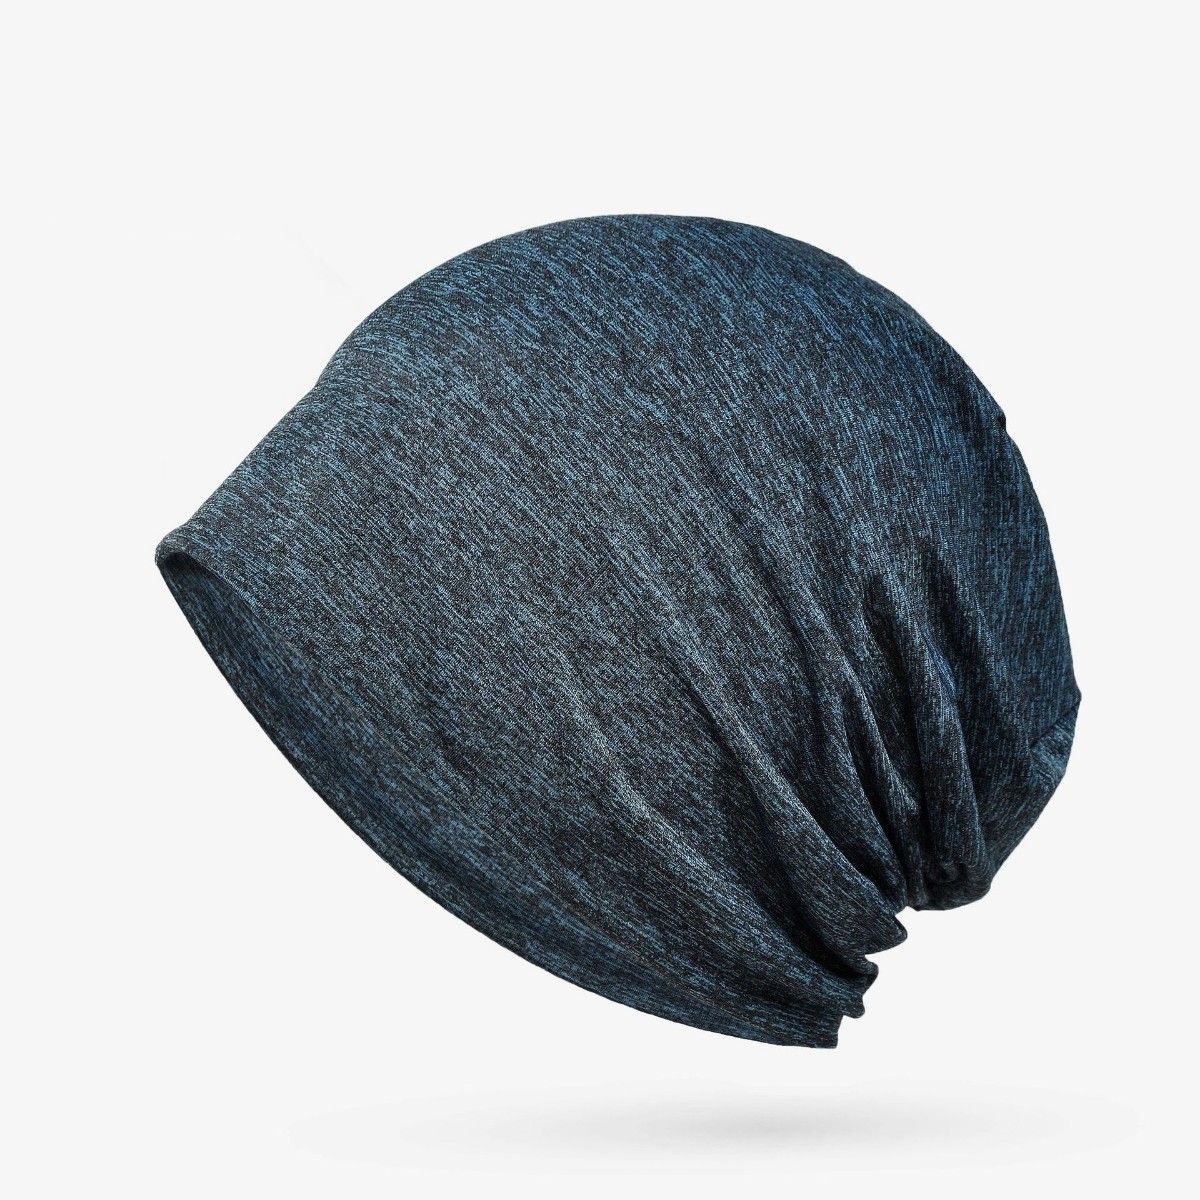 ニット帽 黒×紺ミックス  ニットキャップ ケア帽子 医療用 男女兼用 ビーニー ストレッチ